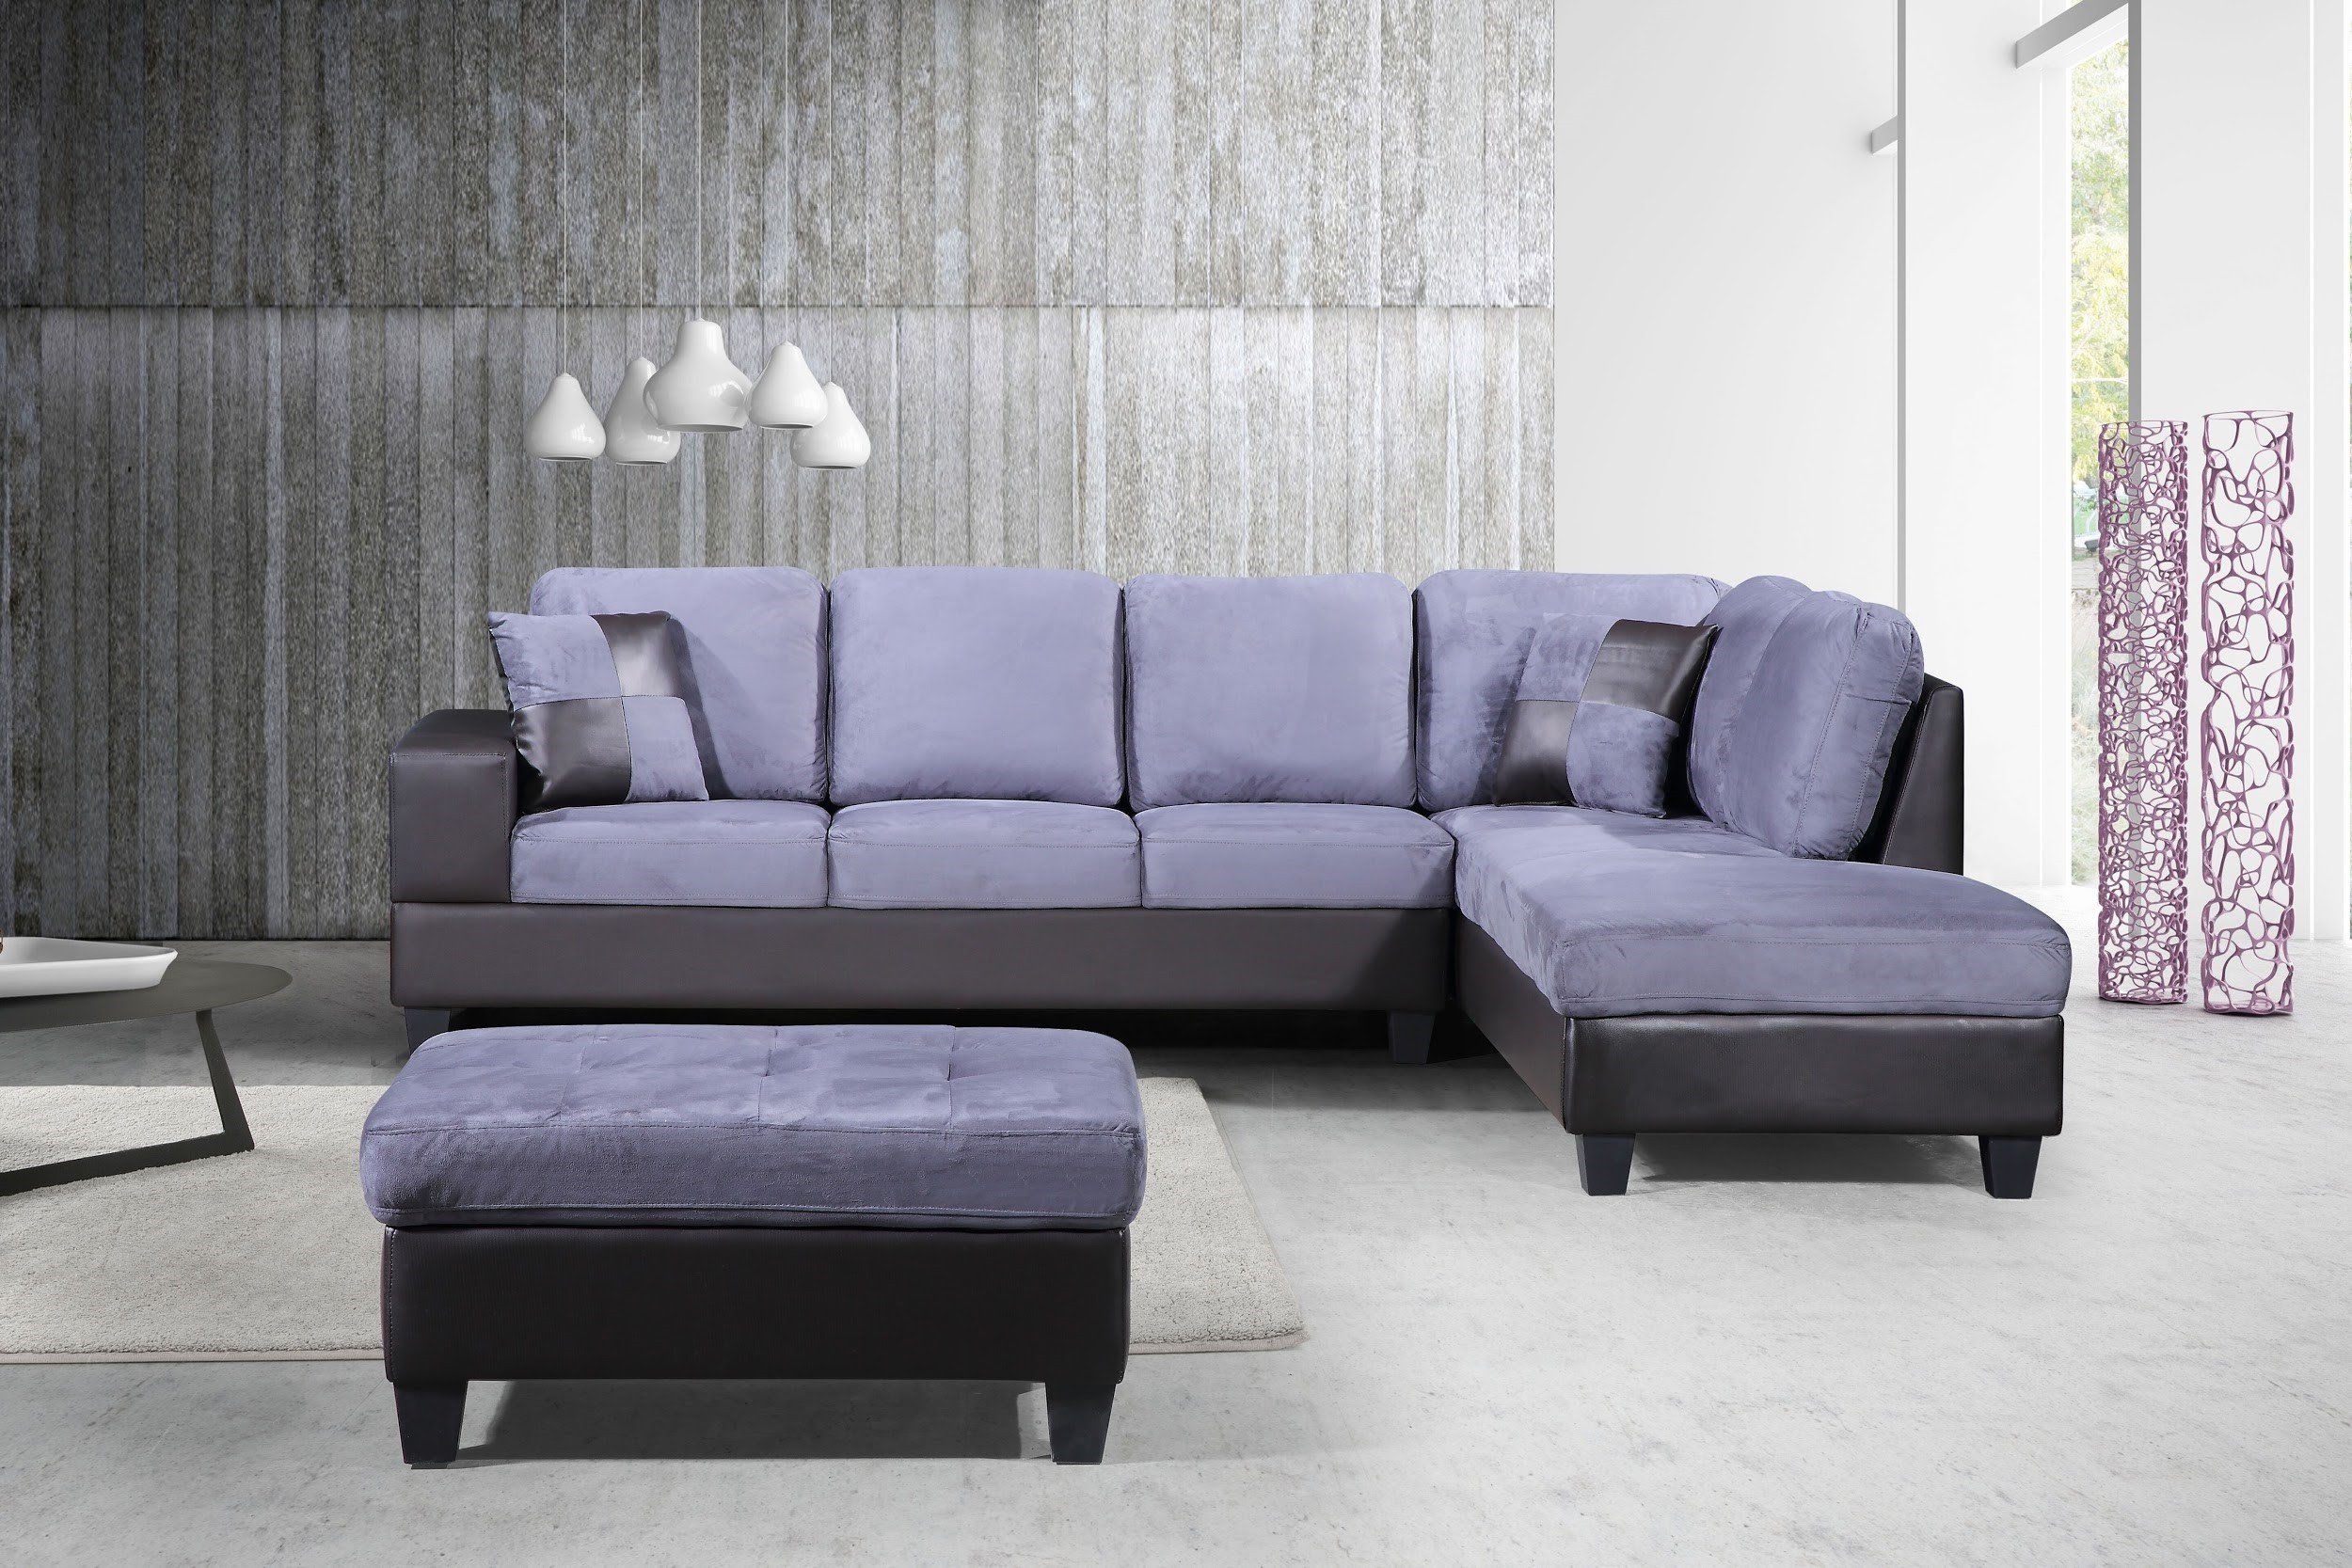 leather or microfiber sofa